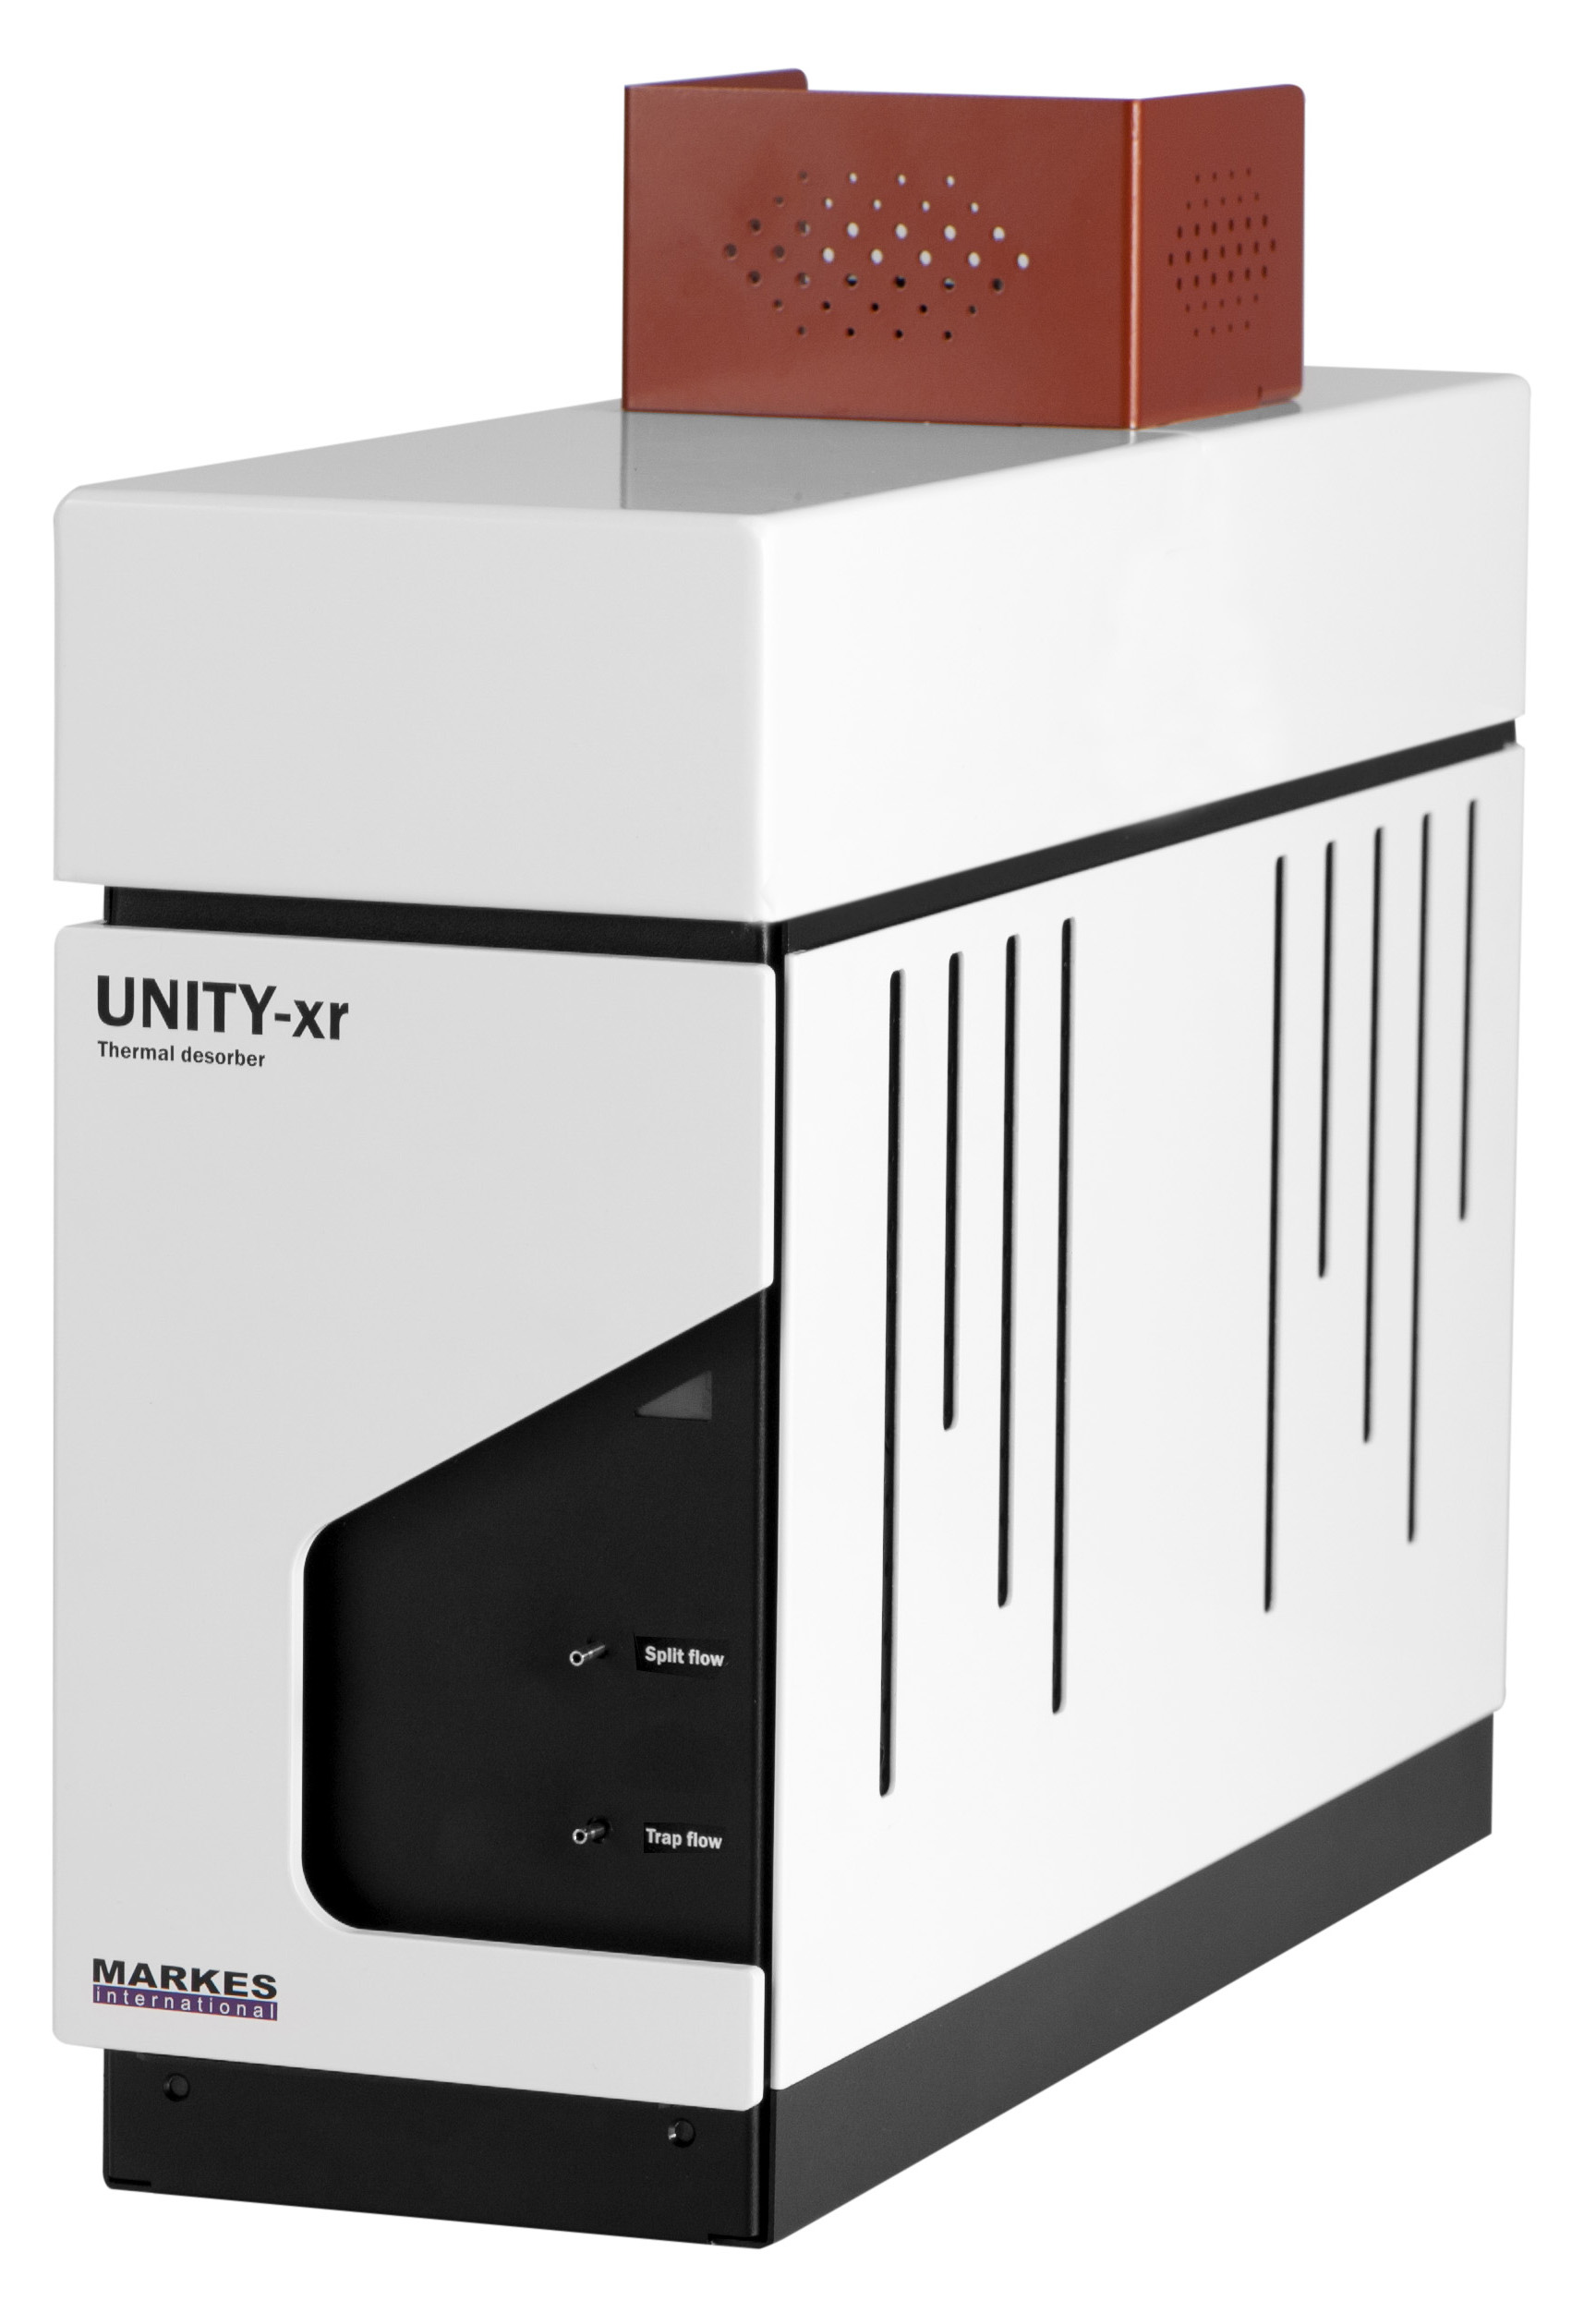 UNITY- xr – Sistema analítico de dessorção térmica